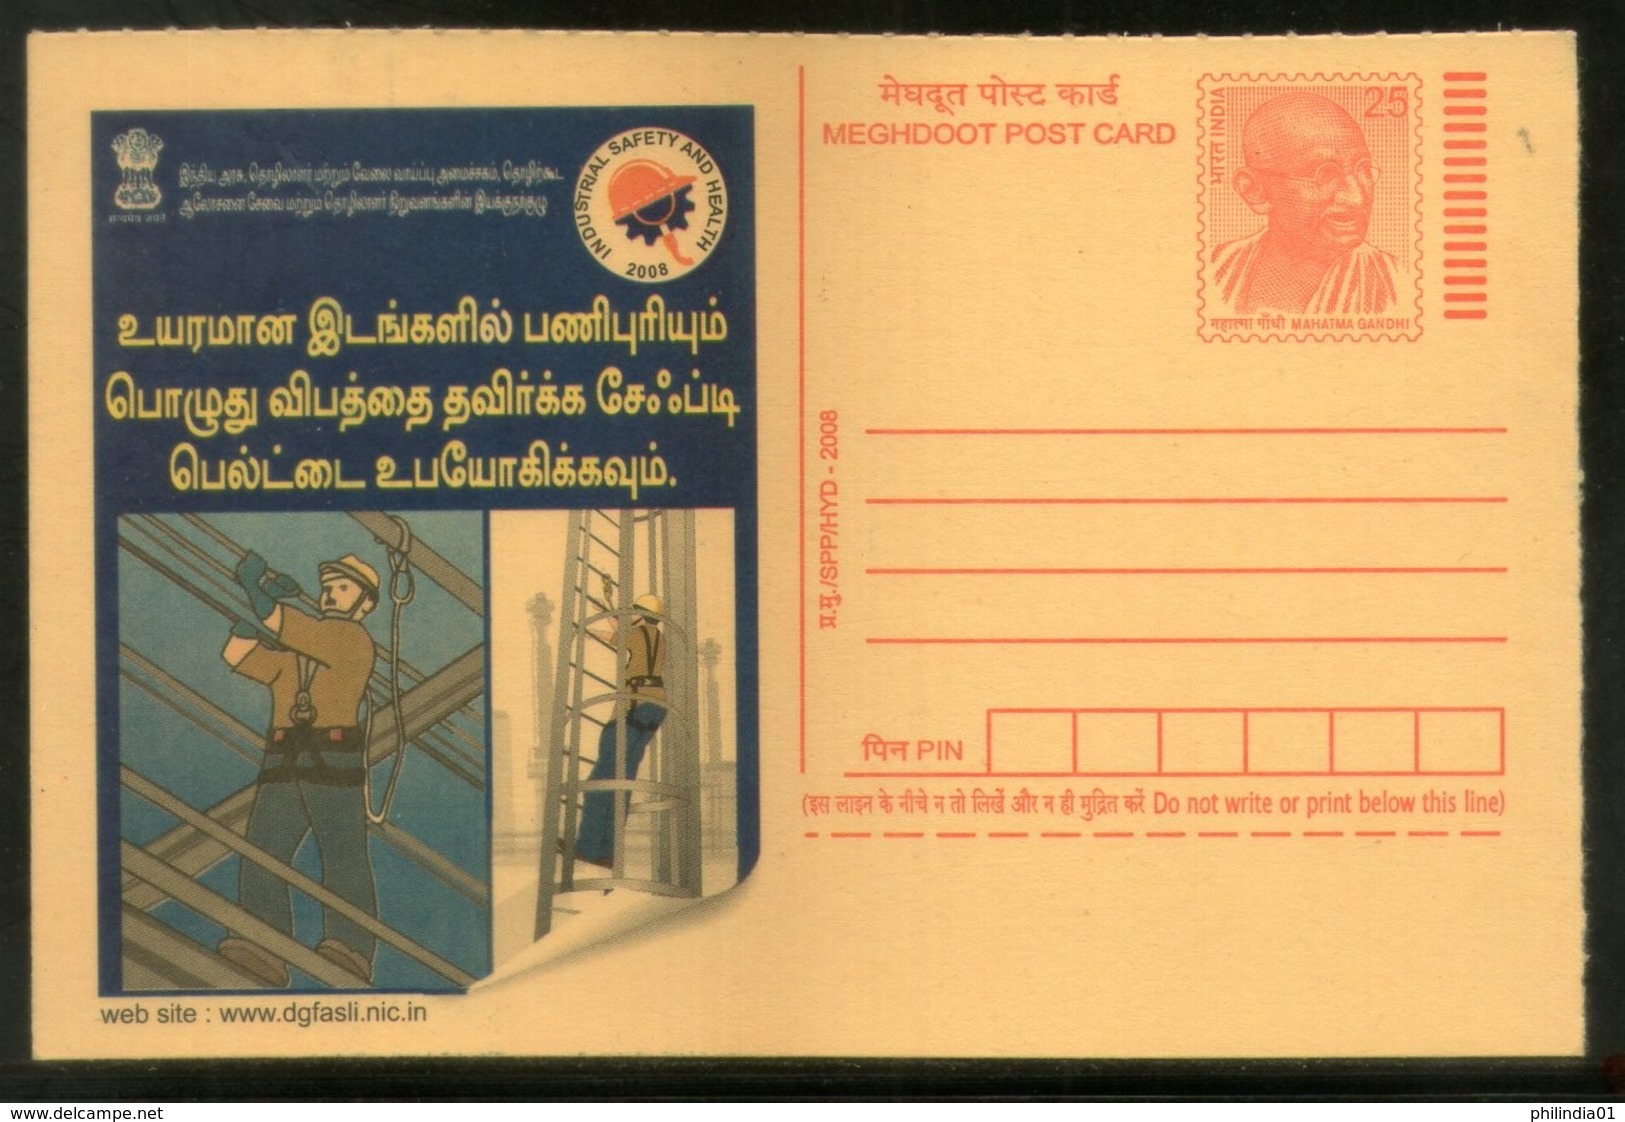 India 2008 "Use Safety Belts On High" Industrial Safety & Health Job Tamil Advert Gandhi Post Card # 504 - Unfälle Und Verkehrssicherheit